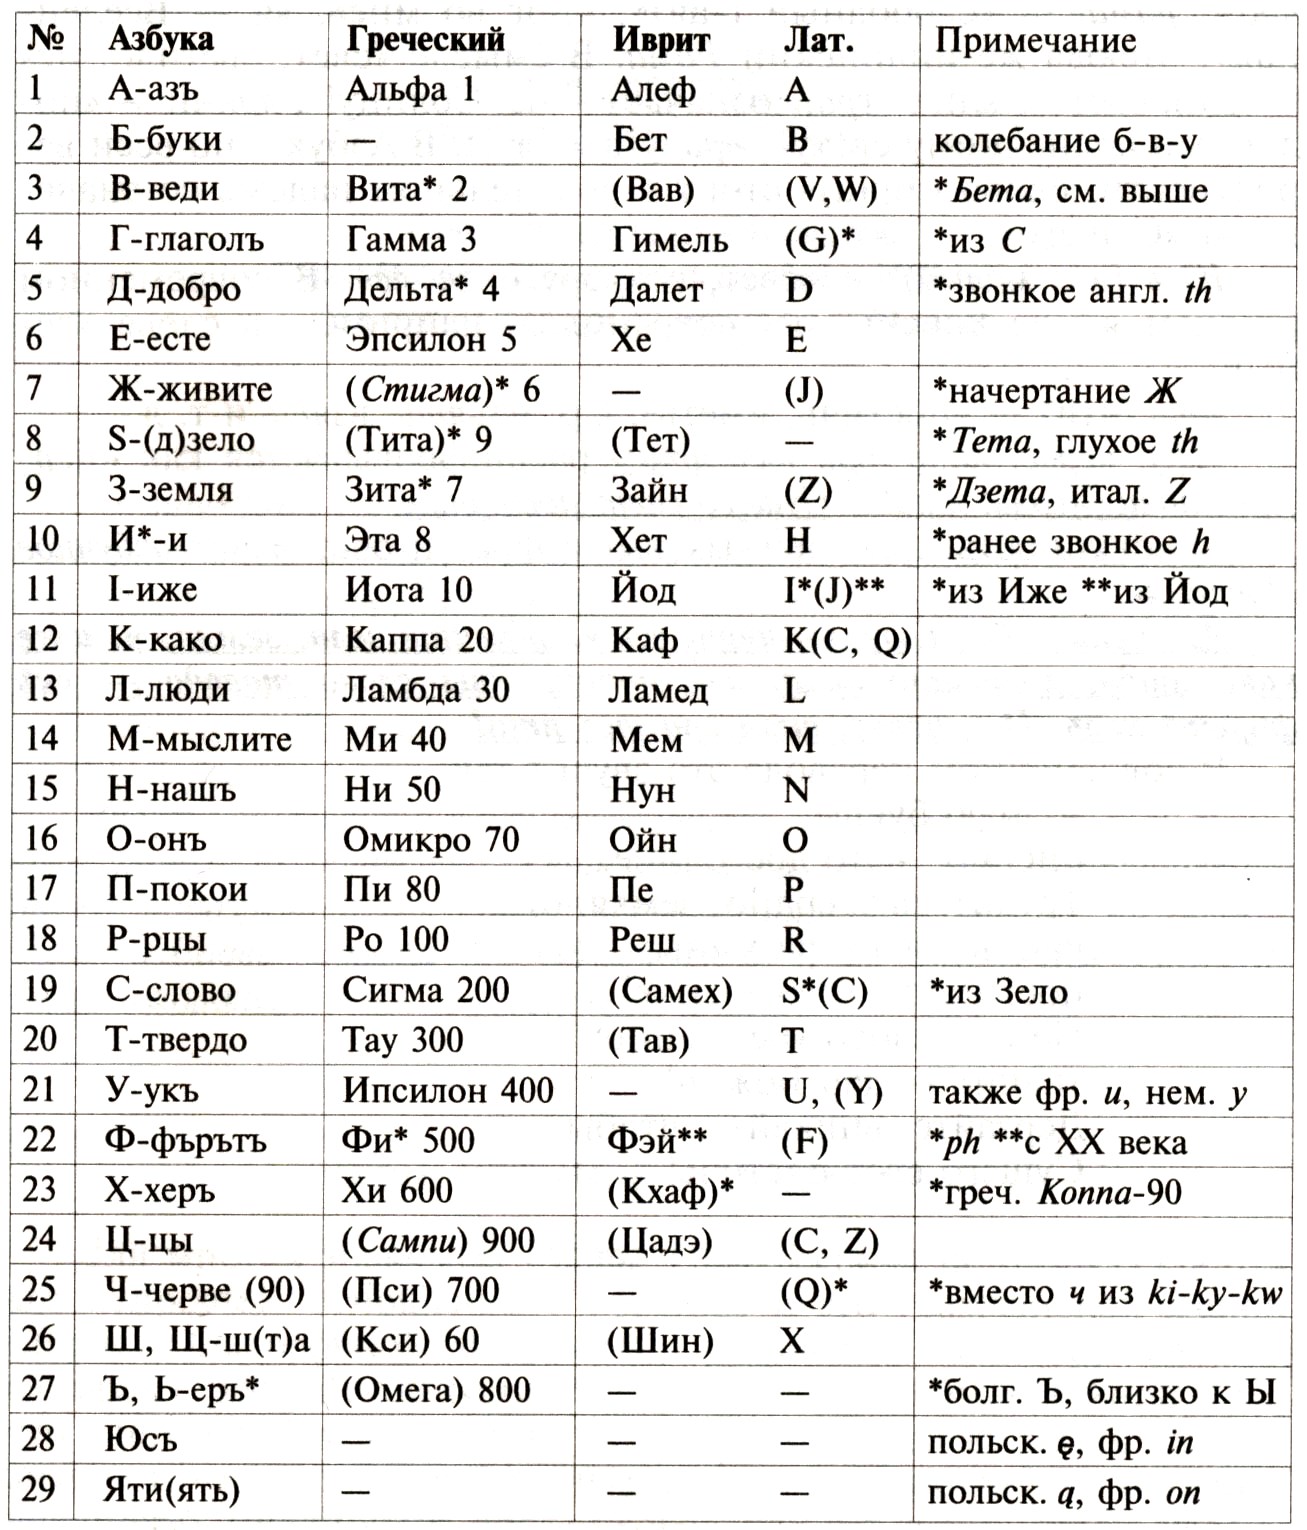 Сравнительный анализ праславянской Азбуки, греческого алфавита, иврита и латиницы.